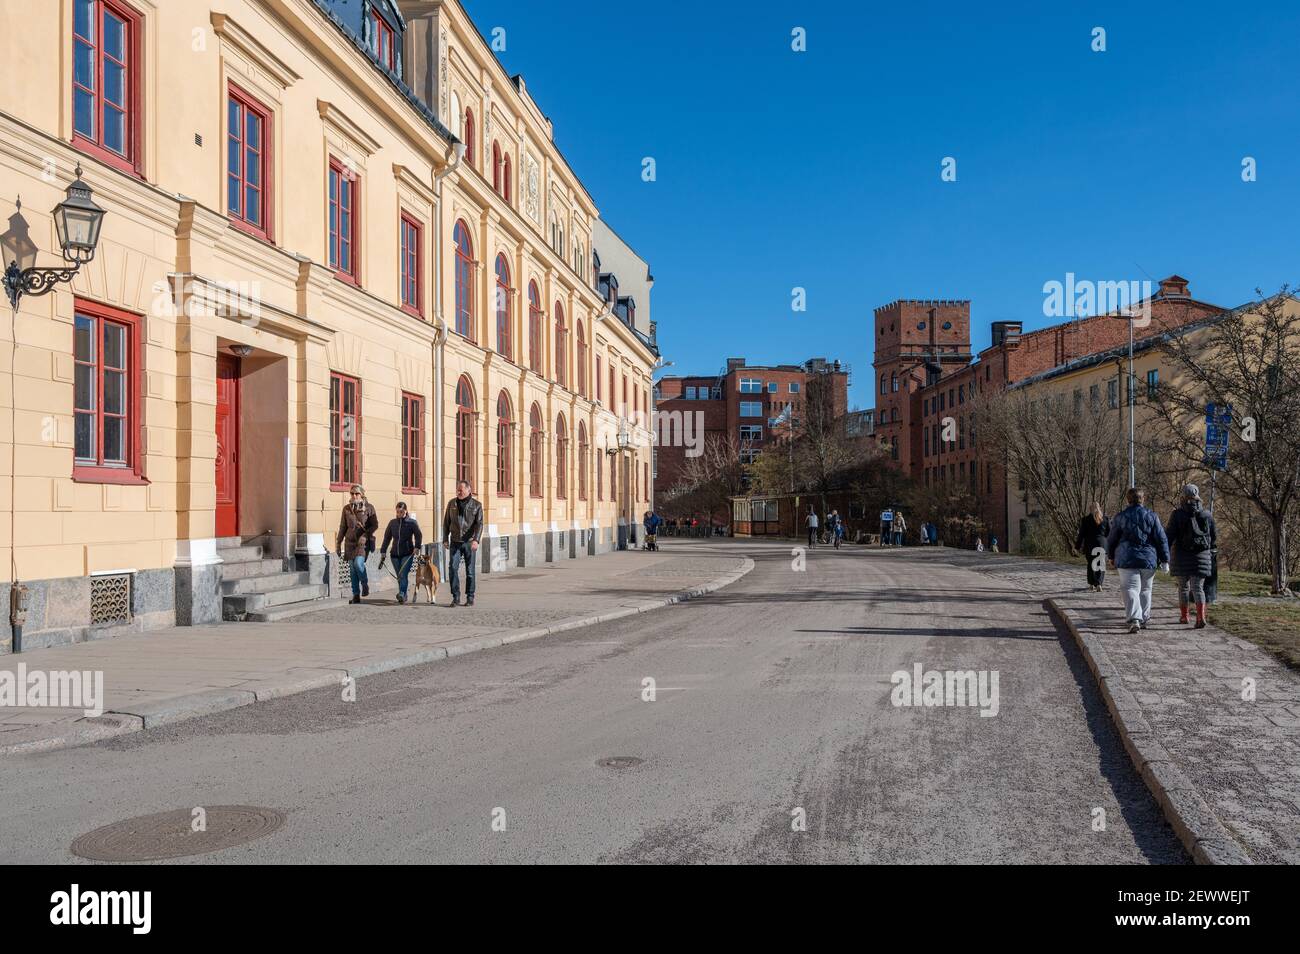 Les gens se promènent devant Arbis au début du printemps à Norrköping, en Suède. Le campus Norrkoping de Linkoping University est visible en arrière-plan. Banque D'Images